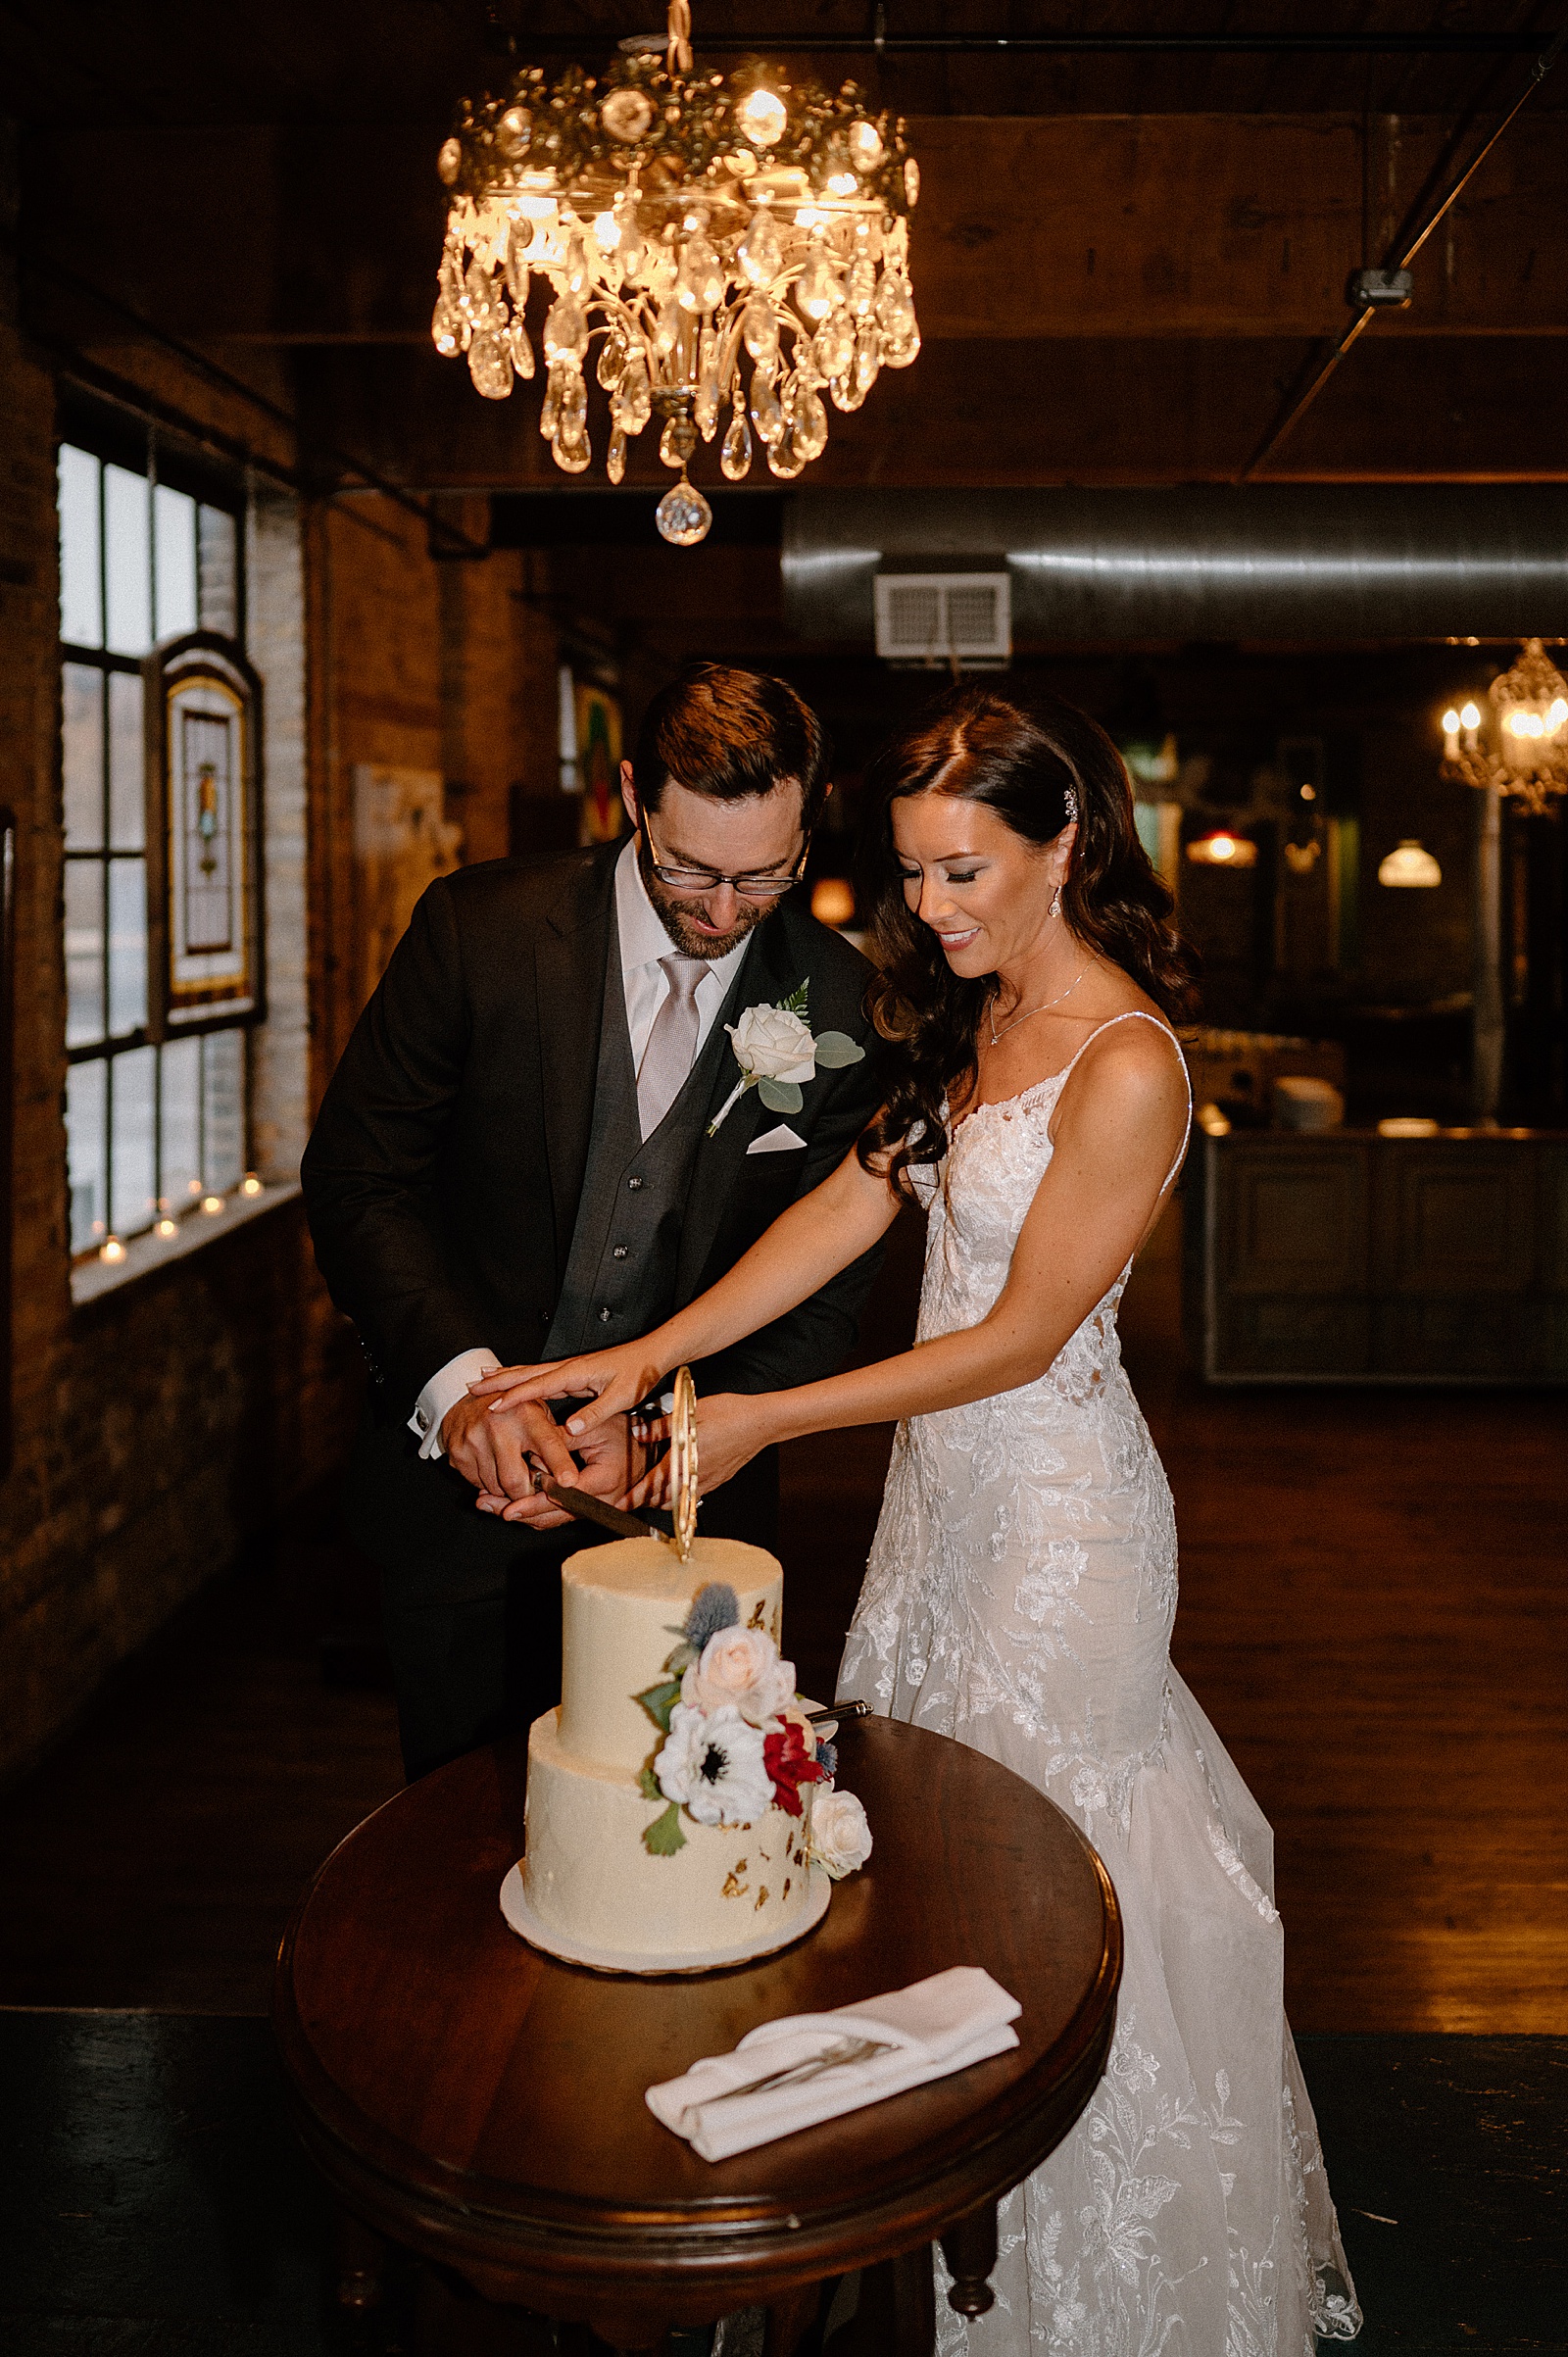 Newlyweds at their wedding reception cutting a cake 